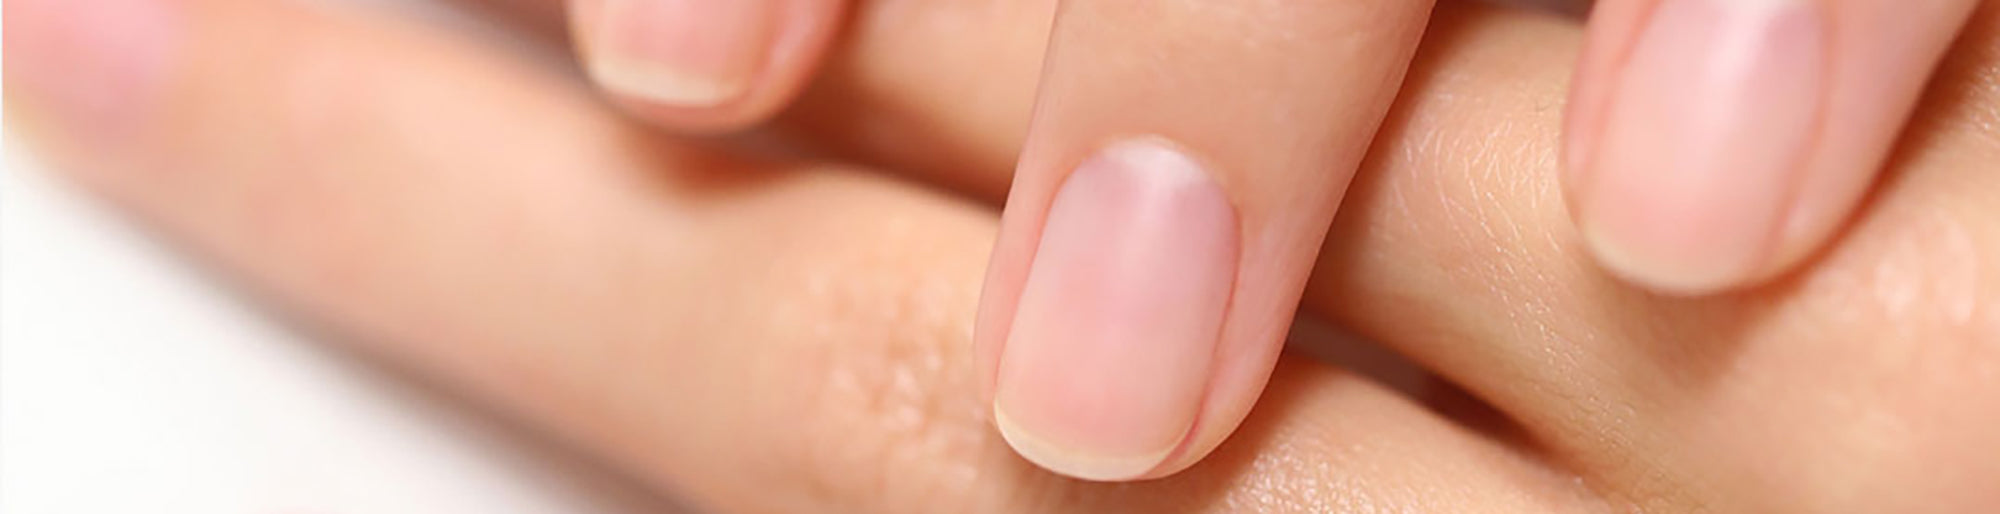 Guida definitiva alle lime per unghie: scegli la migliore per manicure e  pedicure perfetti